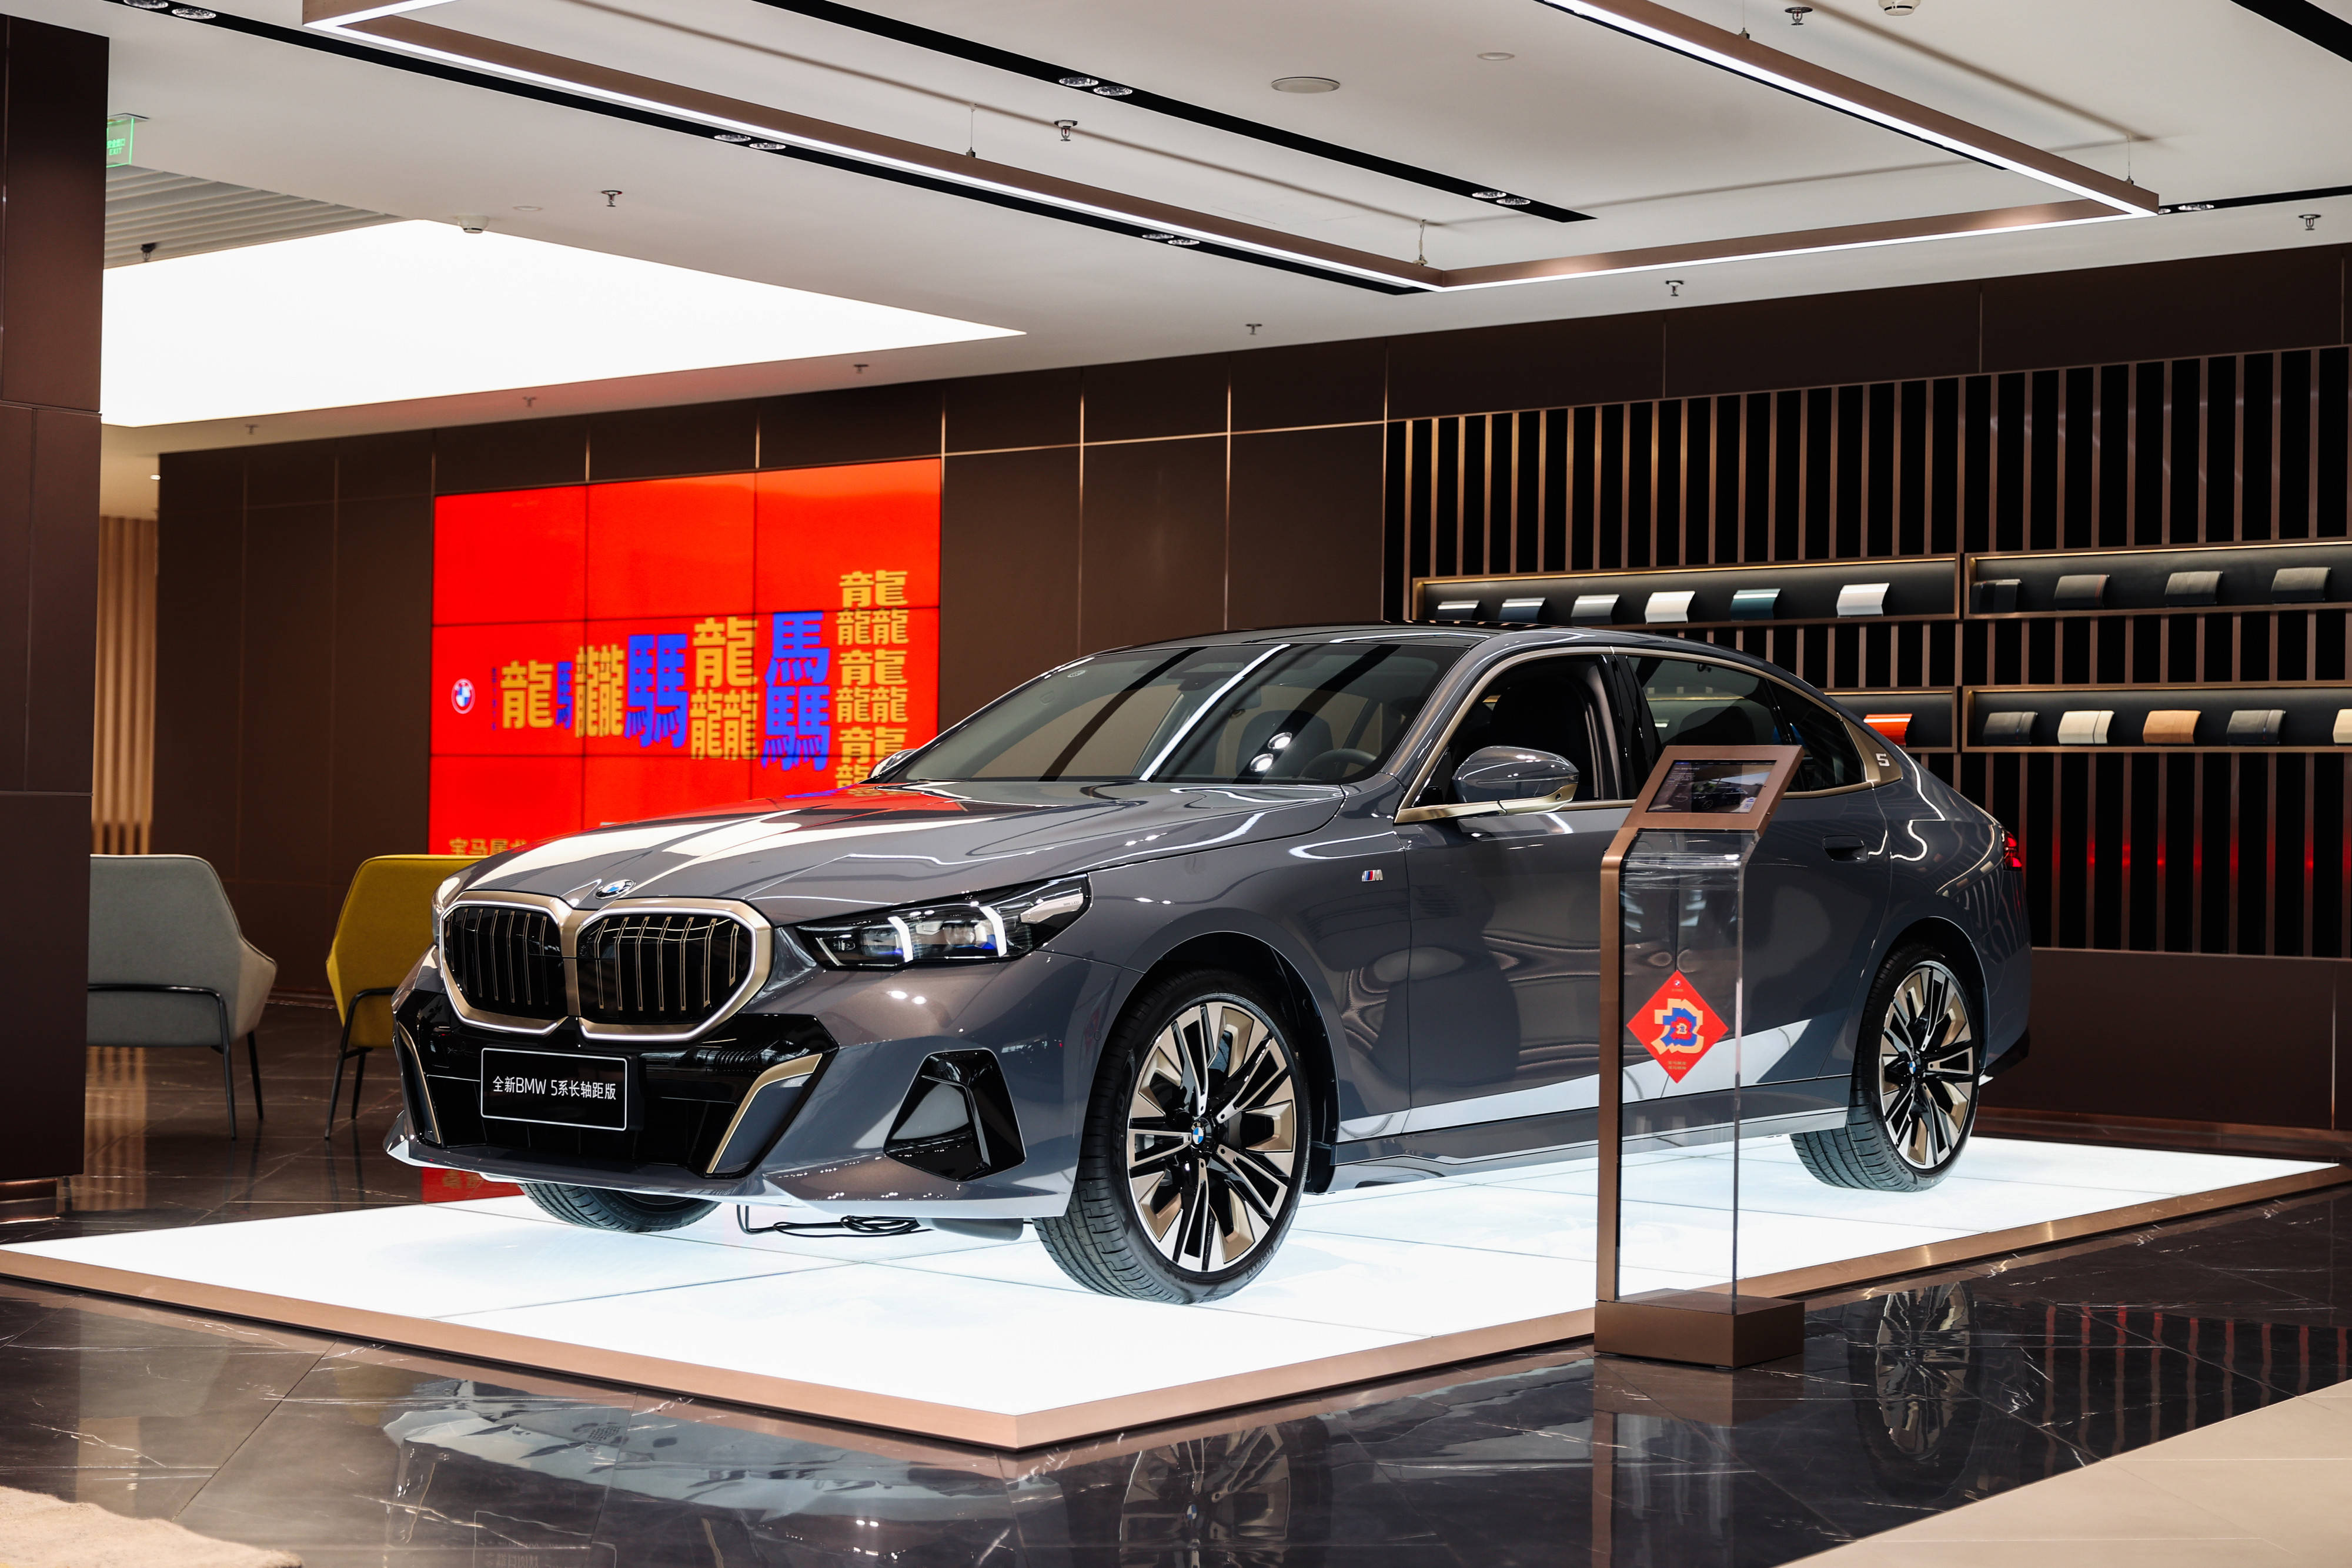 全新BMW 5系新春品鉴会在天津举行